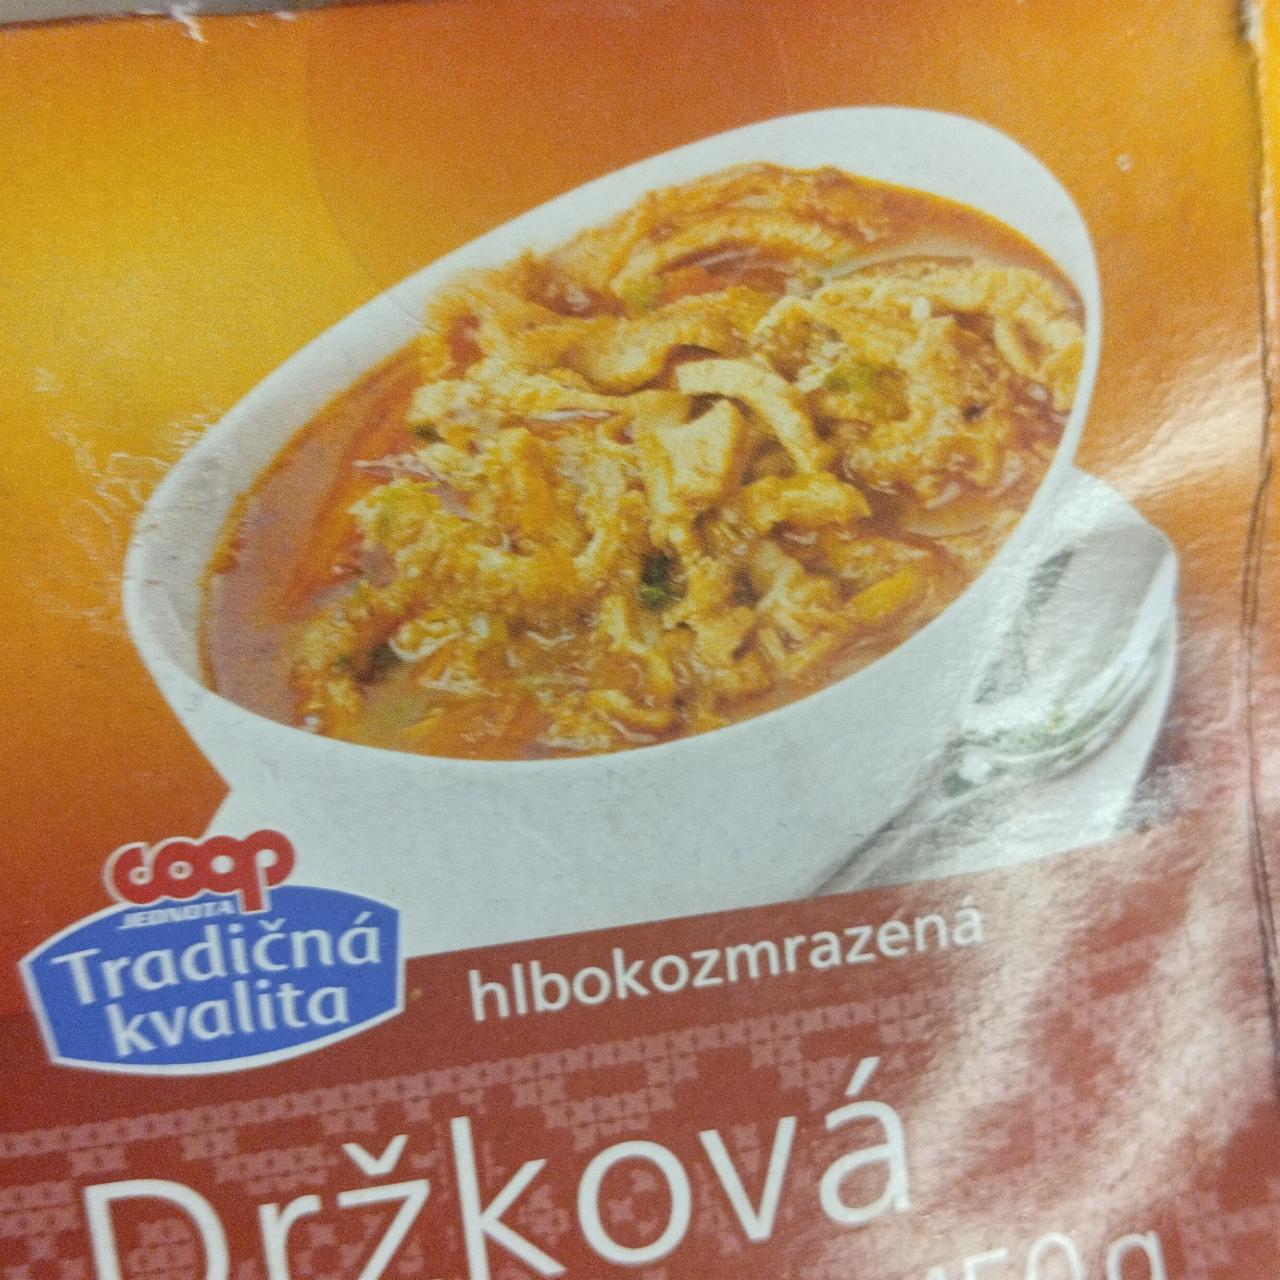 Fotografie - Dršťková polévka Coop Tradičná kvalita